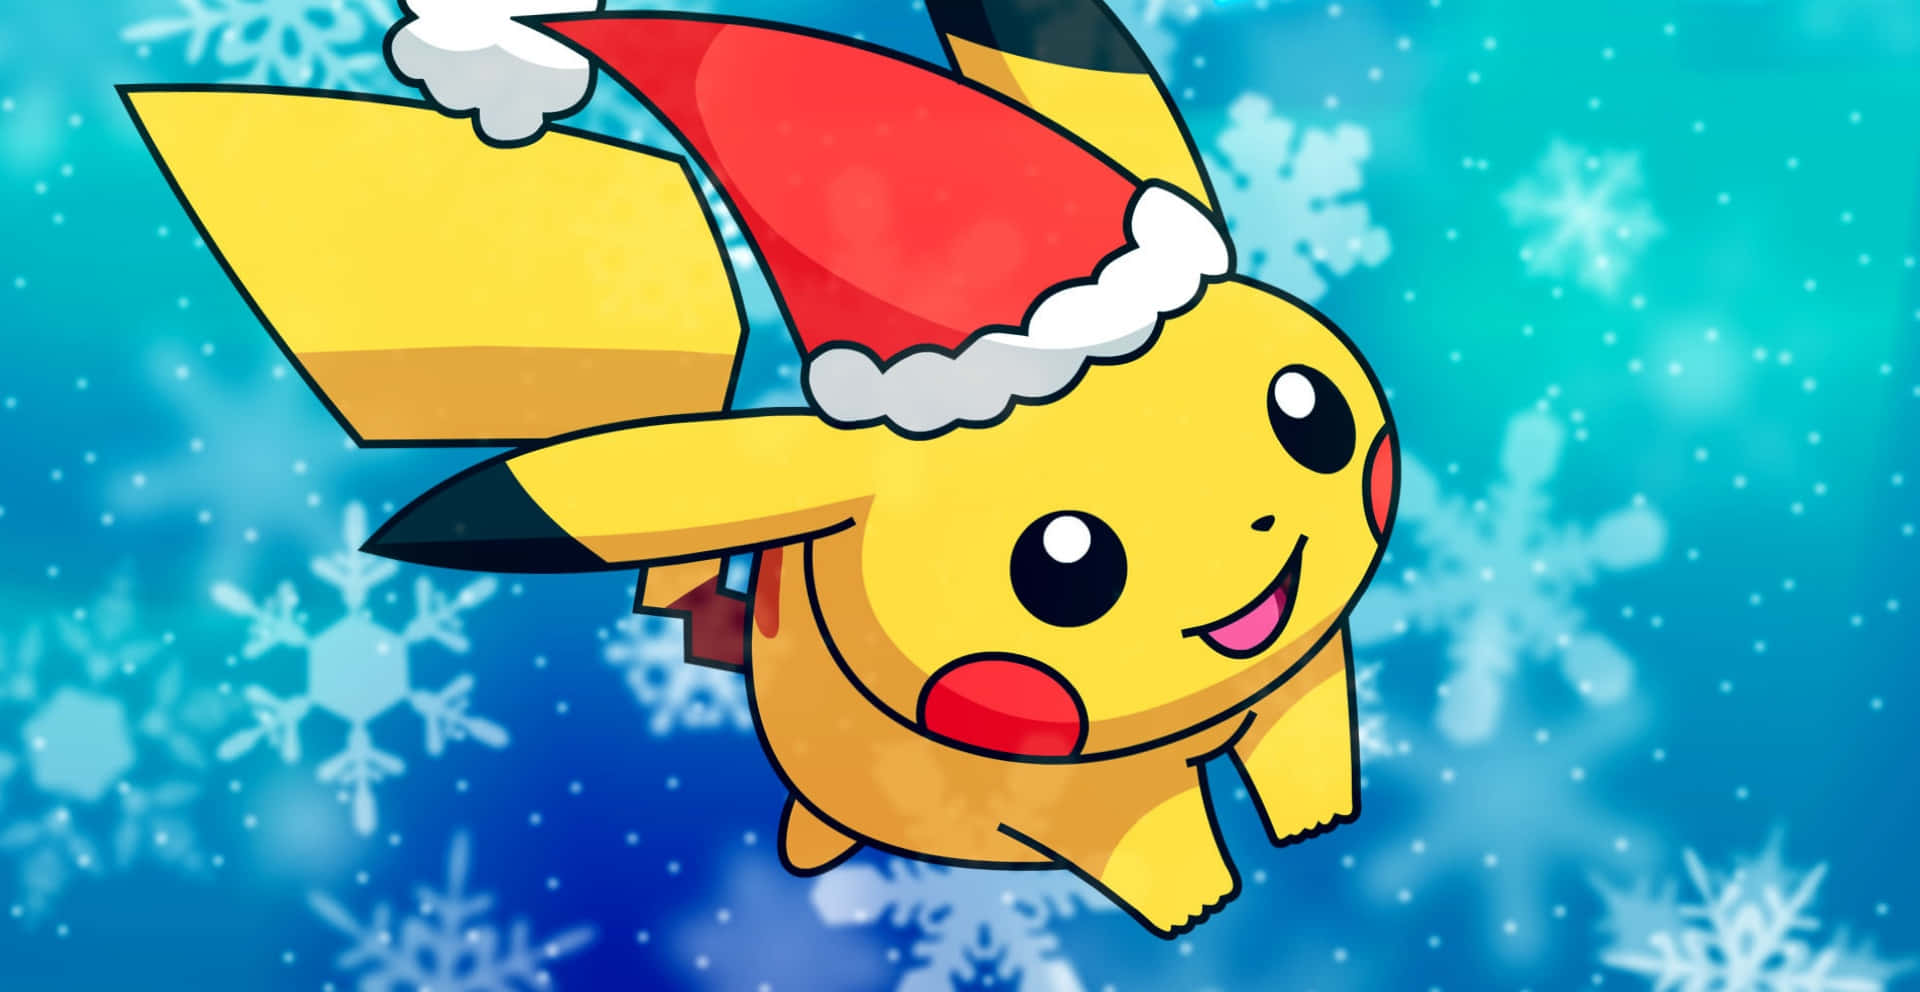 Imagende Pikachu Con Un Sombrero De Santa.